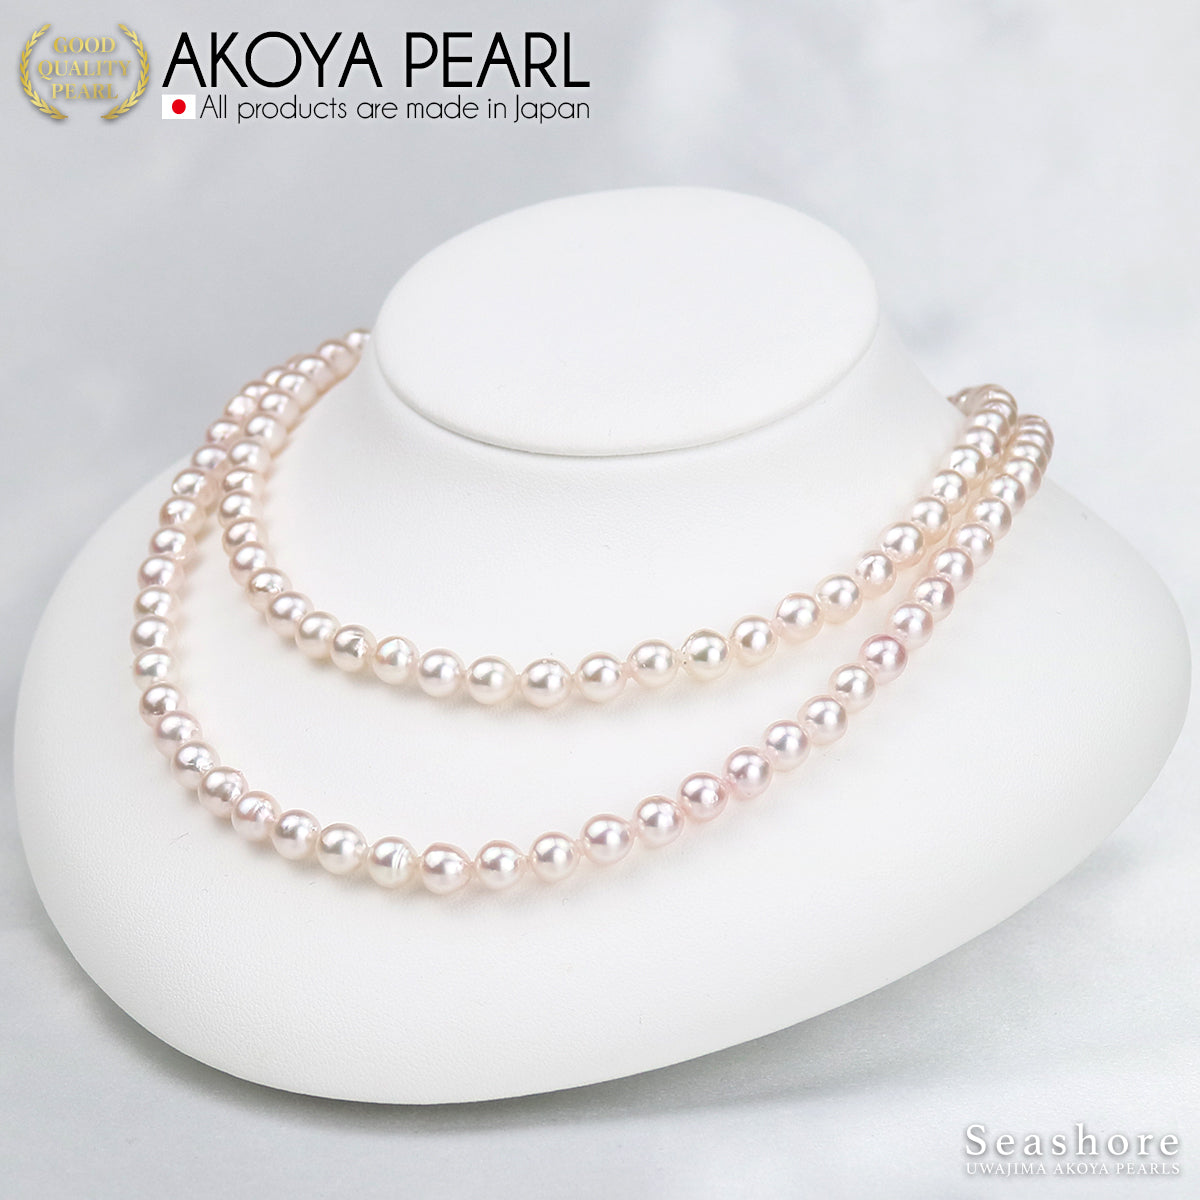 Akoya 珍珠长珍珠项链 80 厘米 85 厘米半巴洛克 [6.5-7.0 毫米] 白色真品证书，含纸板盒 (4090)